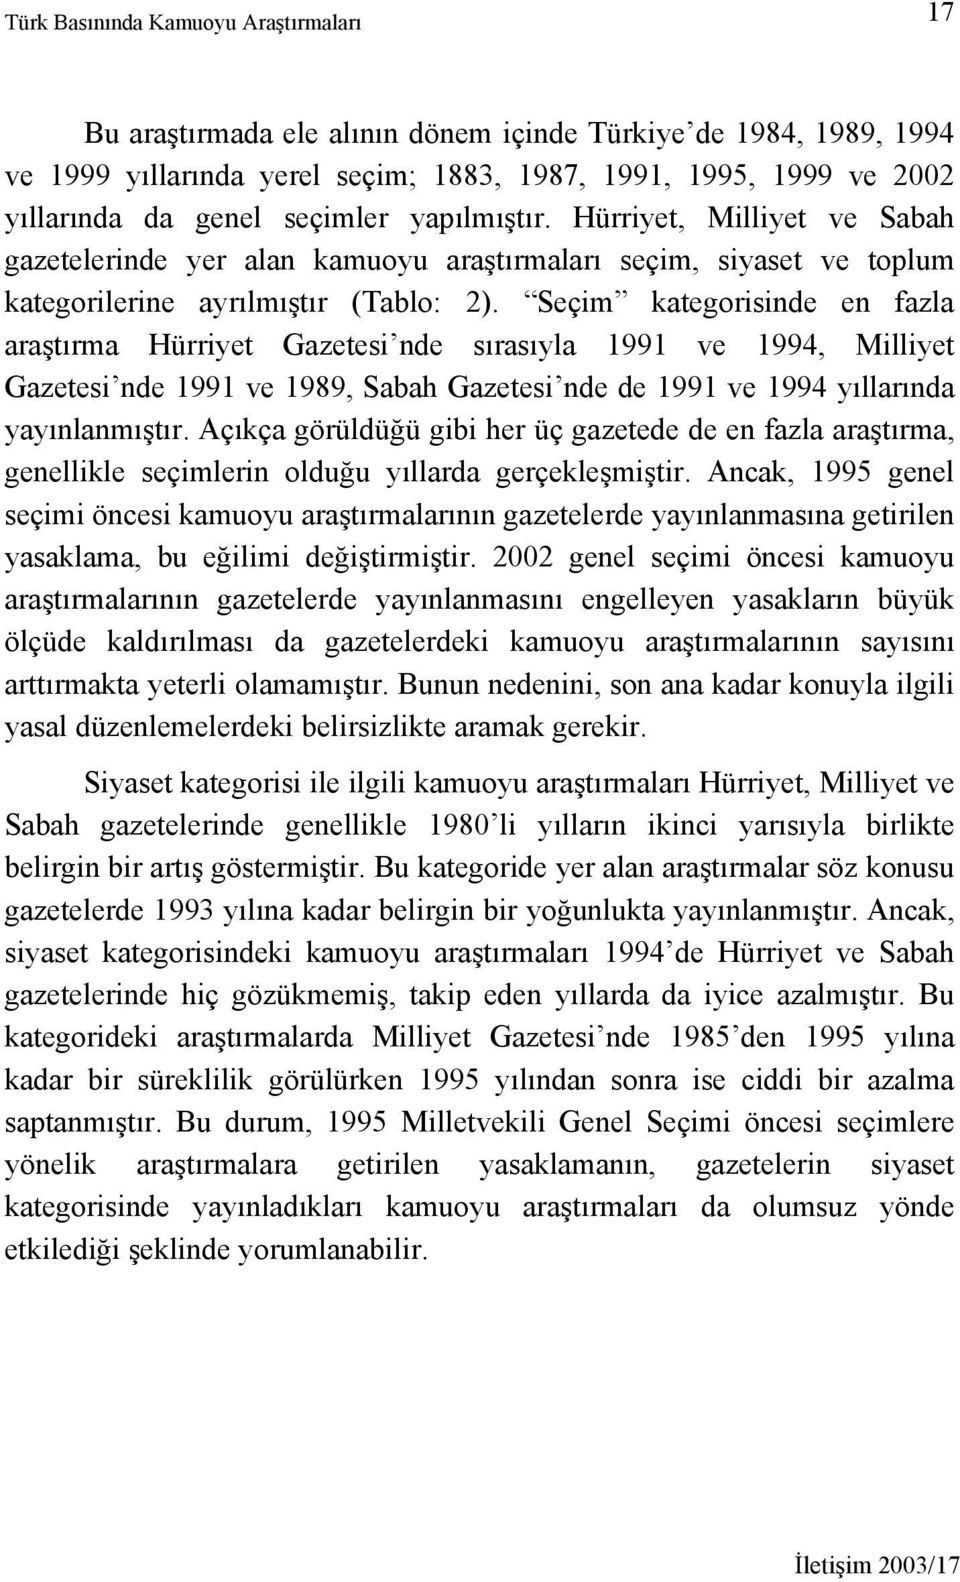 Seçim kategorisinde en fazla araştırma Hürriyet Gazetesi nde sırasıyla 1991 ve 1994, Milliyet Gazetesi nde 1991 ve 1989, Sabah Gazetesi nde de 1991 ve 1994 yıllarında yayınlanmıştır.